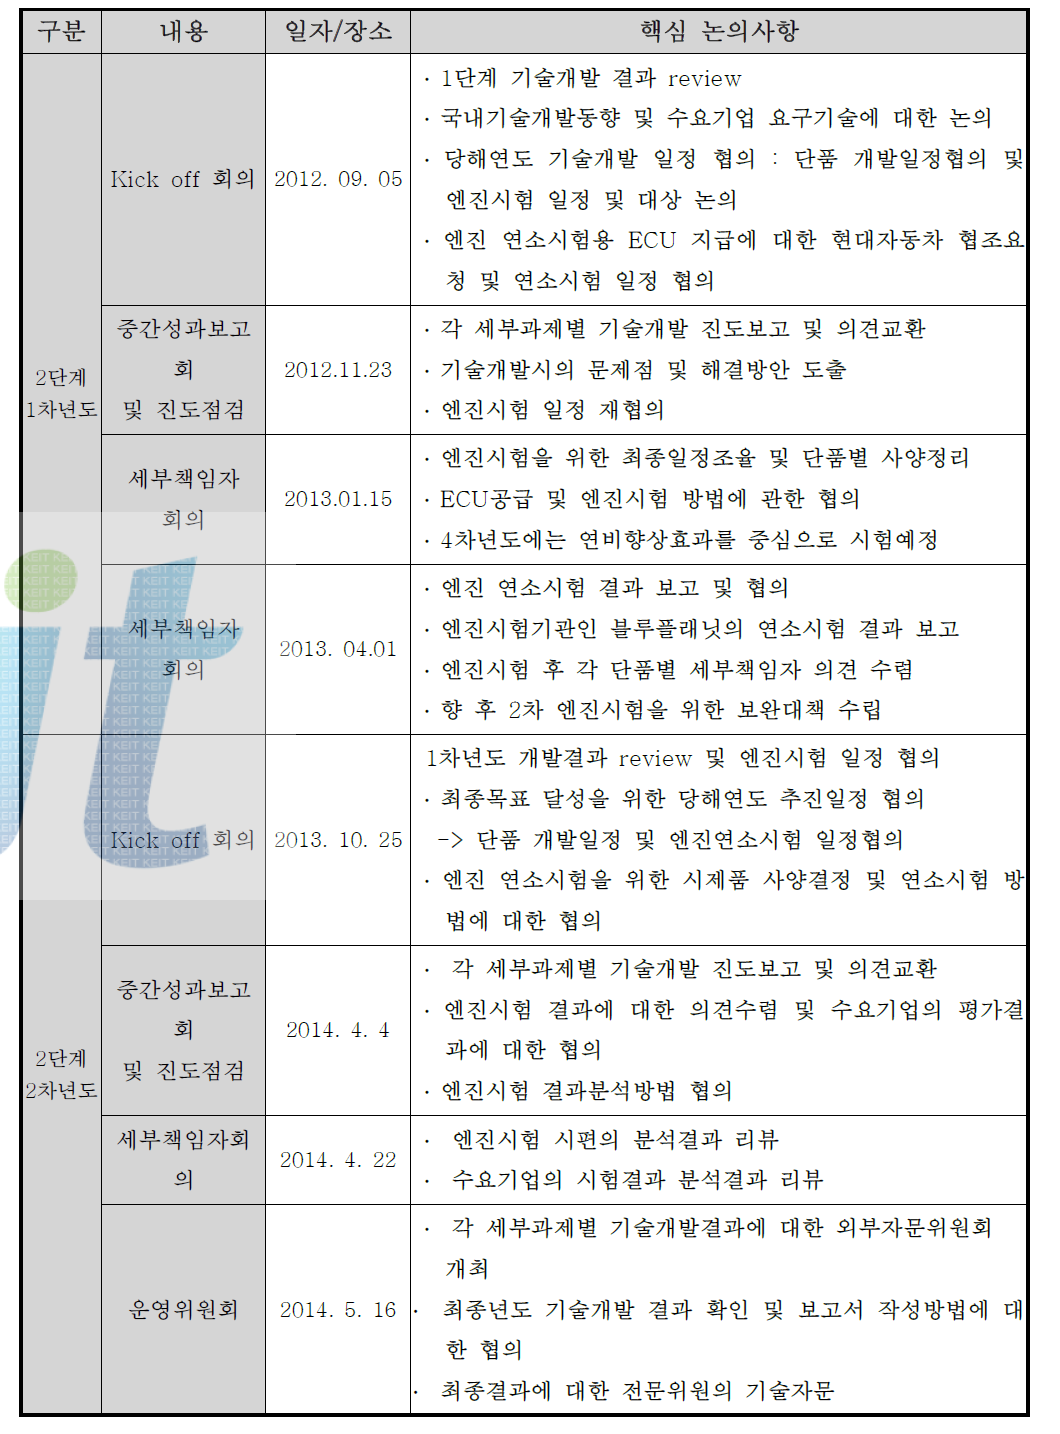 총괄기관(한국생산기술연구원) 주관 2단계 기술세미나 개최현황